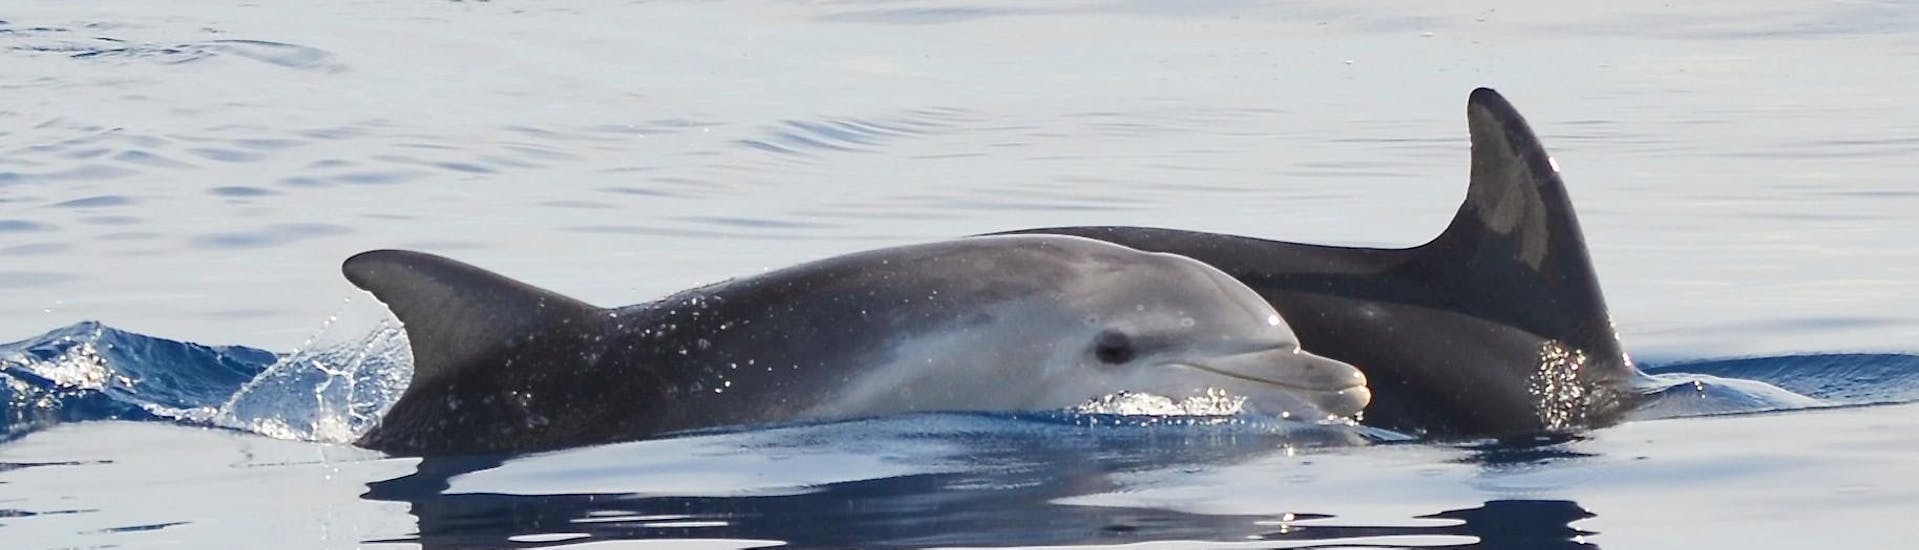 Los bellos y curiosos delfines que podremos ver durante el paseo en barco de avistamiento de delfines en Alghero con Progetto Natura Alghero.